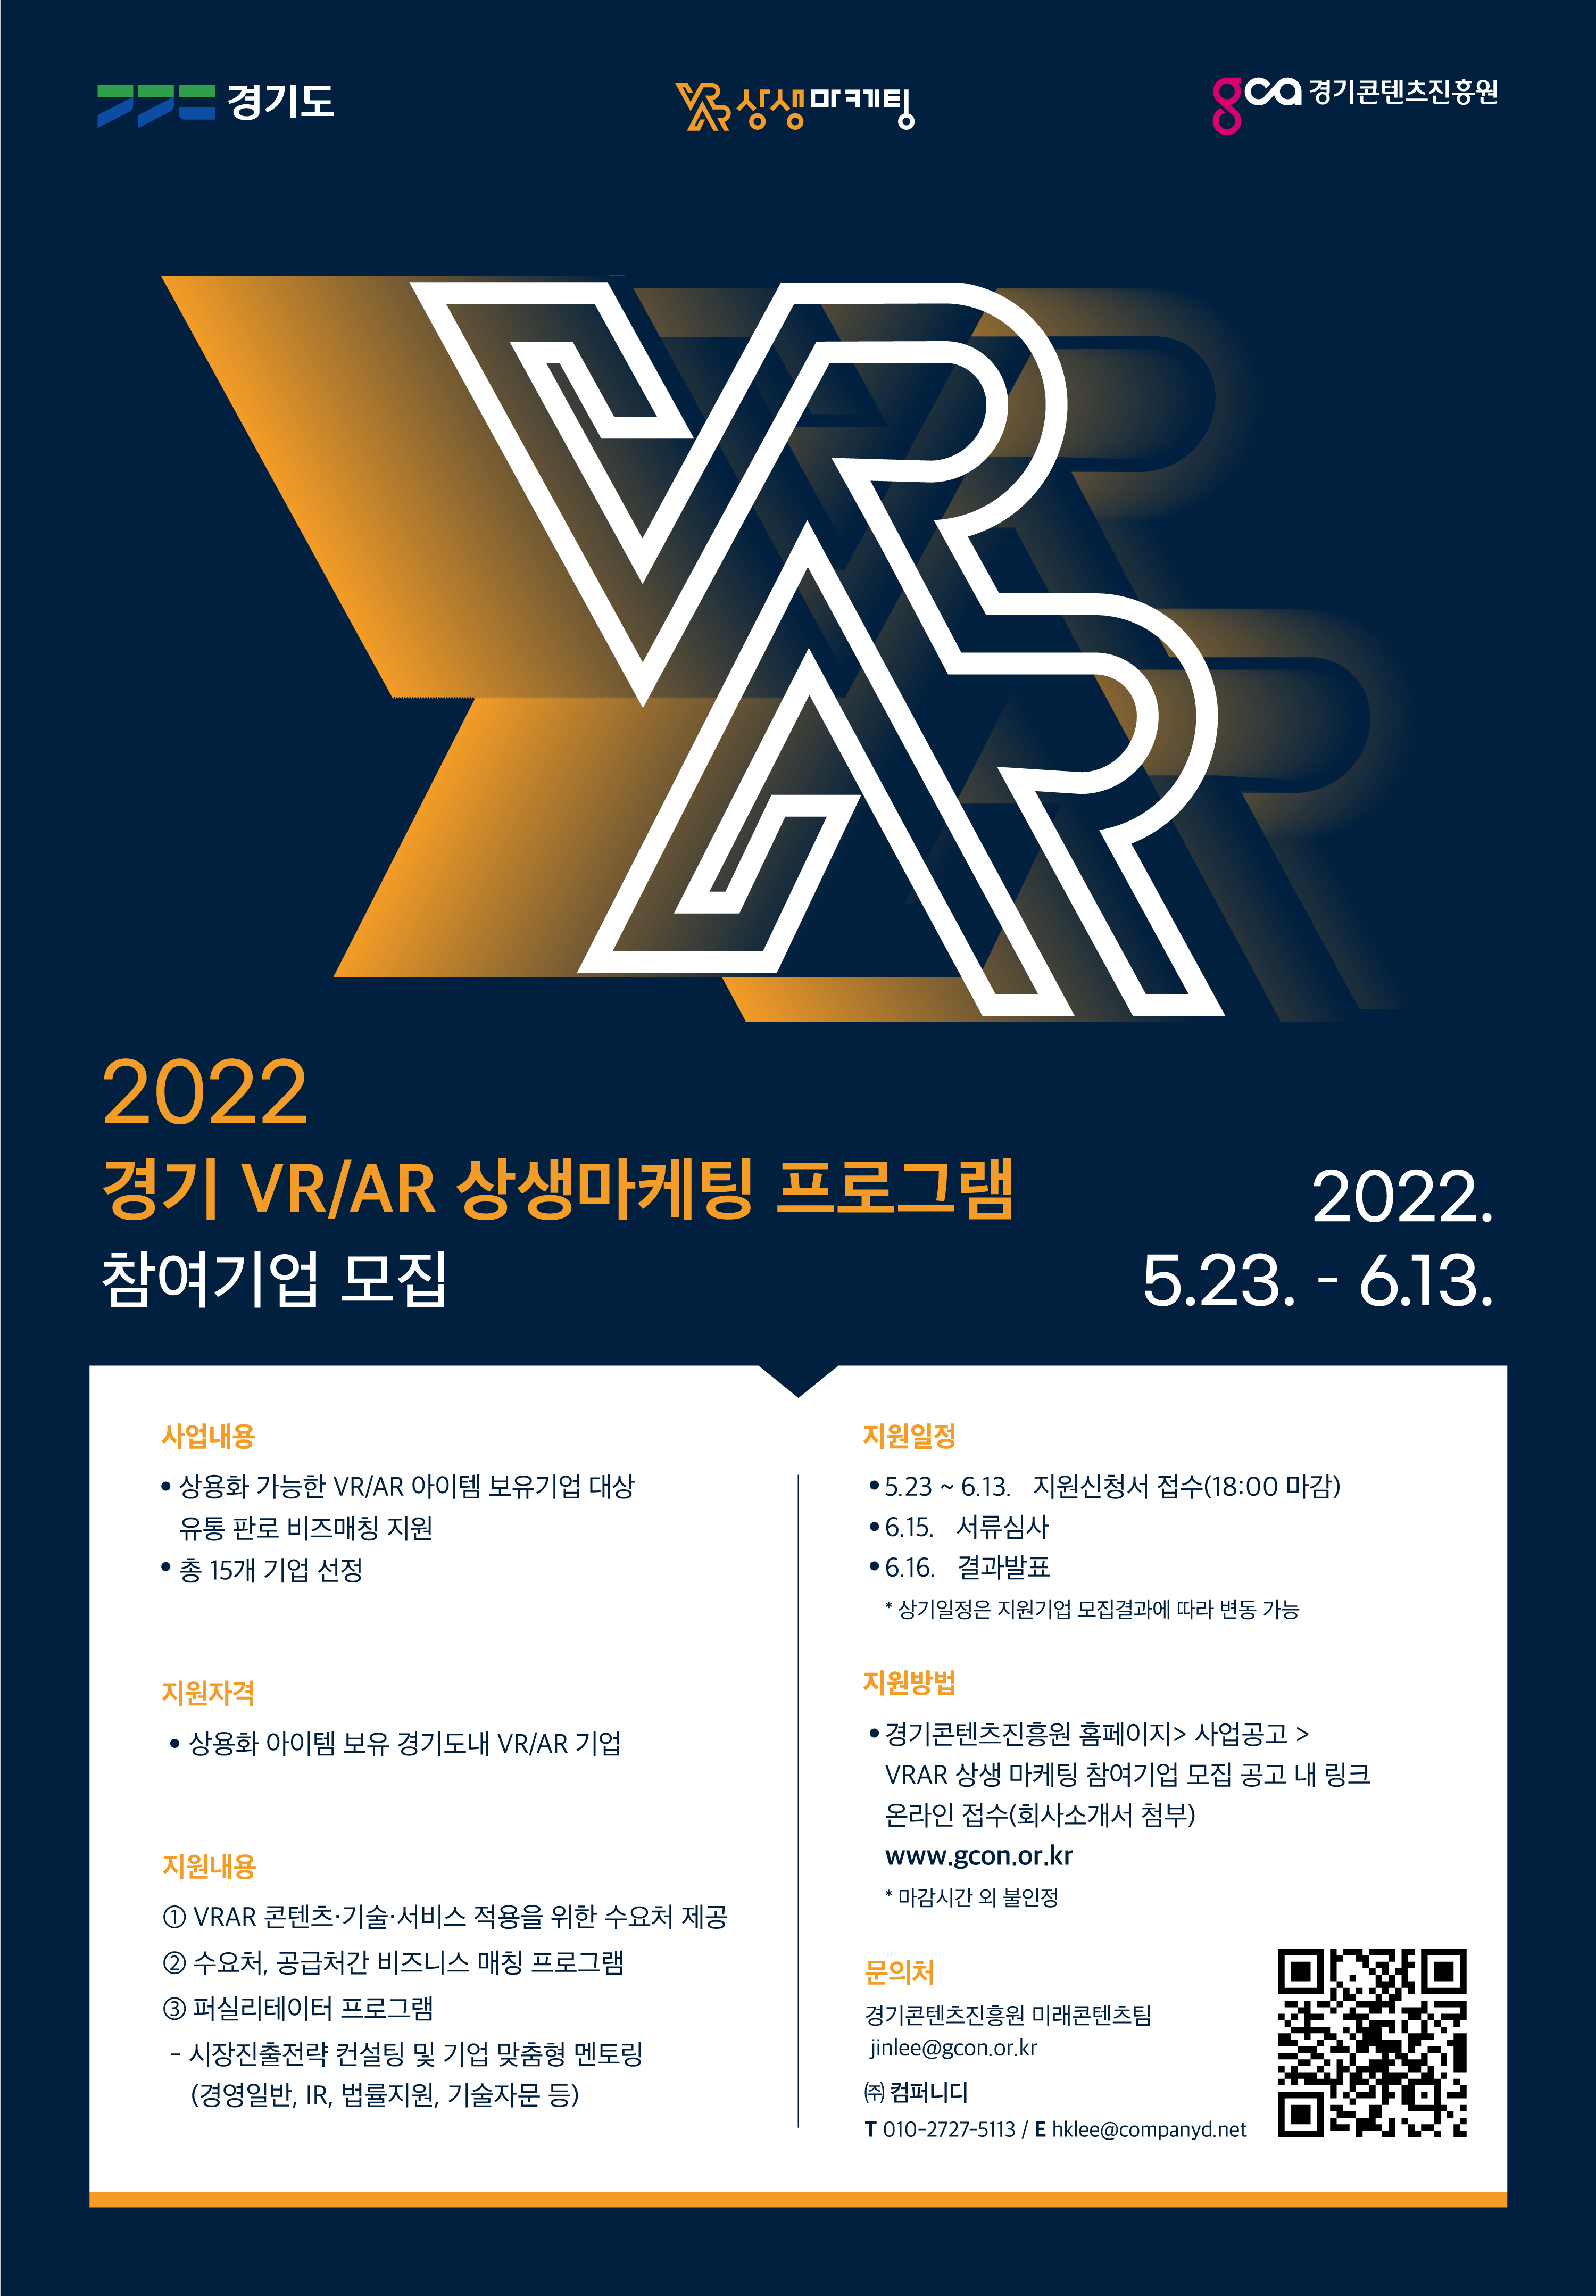 2022년 'VR/AR 상생마케팅' 프로그램 참여기업 모집